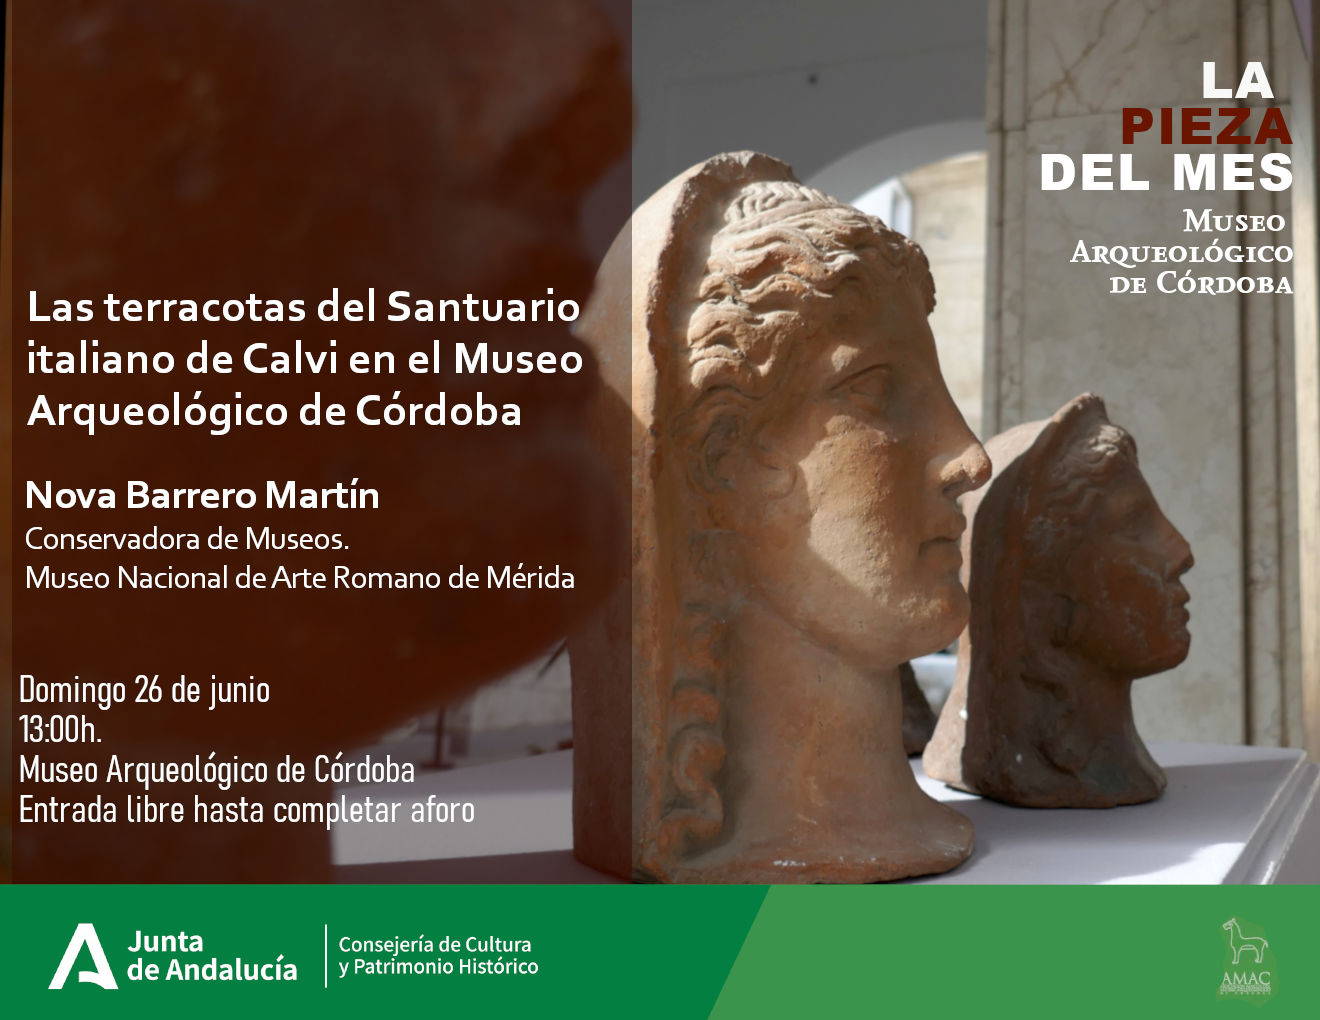 La Pieza del Mes - Las terracotas del santuario italiano de Calvi en el Museo Arqueológico de Córdoba